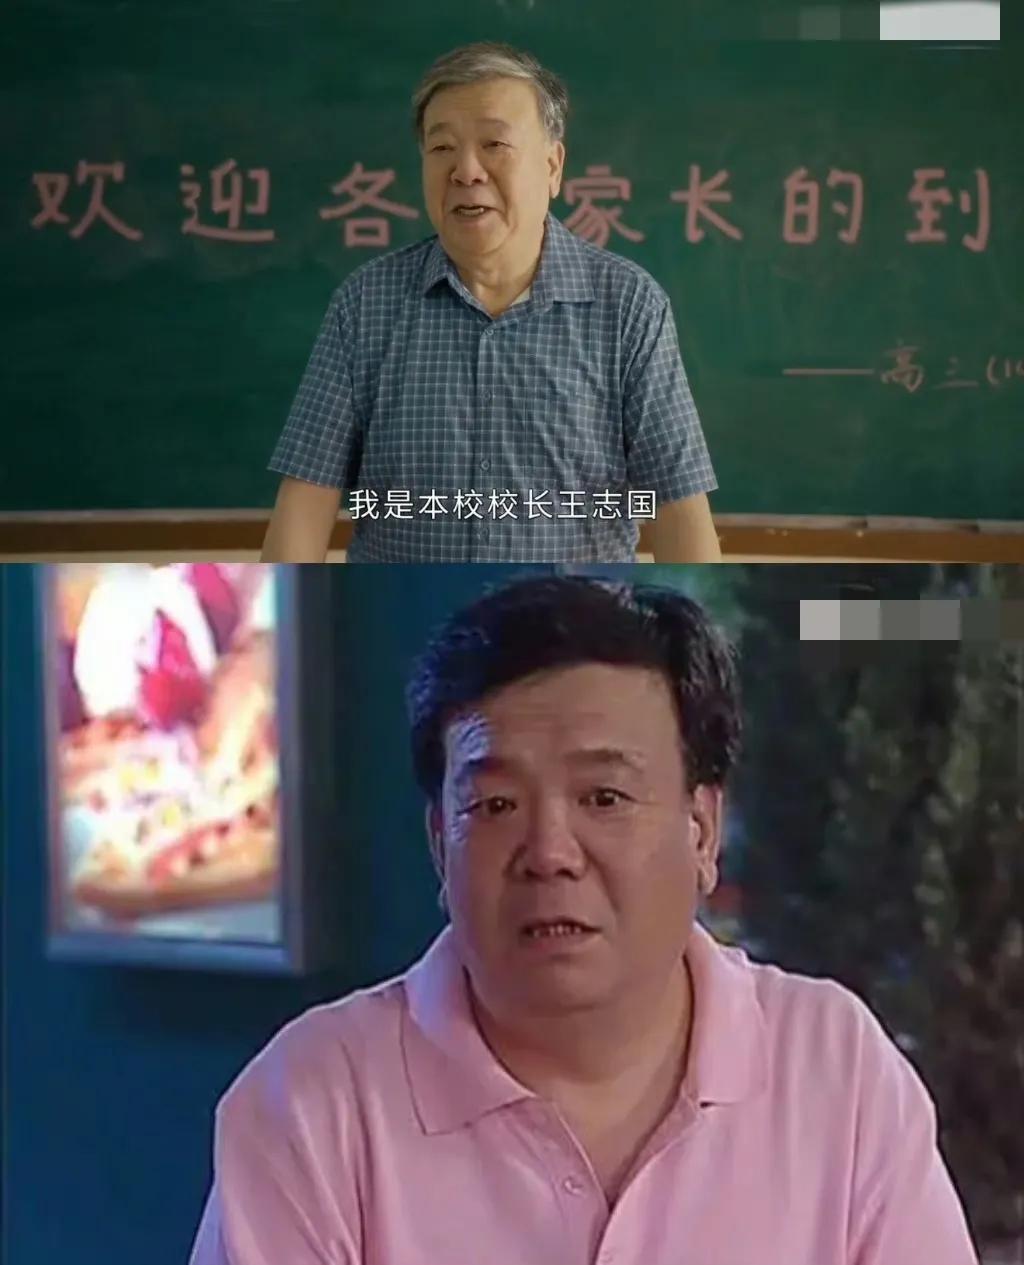 Liu Xing's father, Hu Yitong, is getting old in 